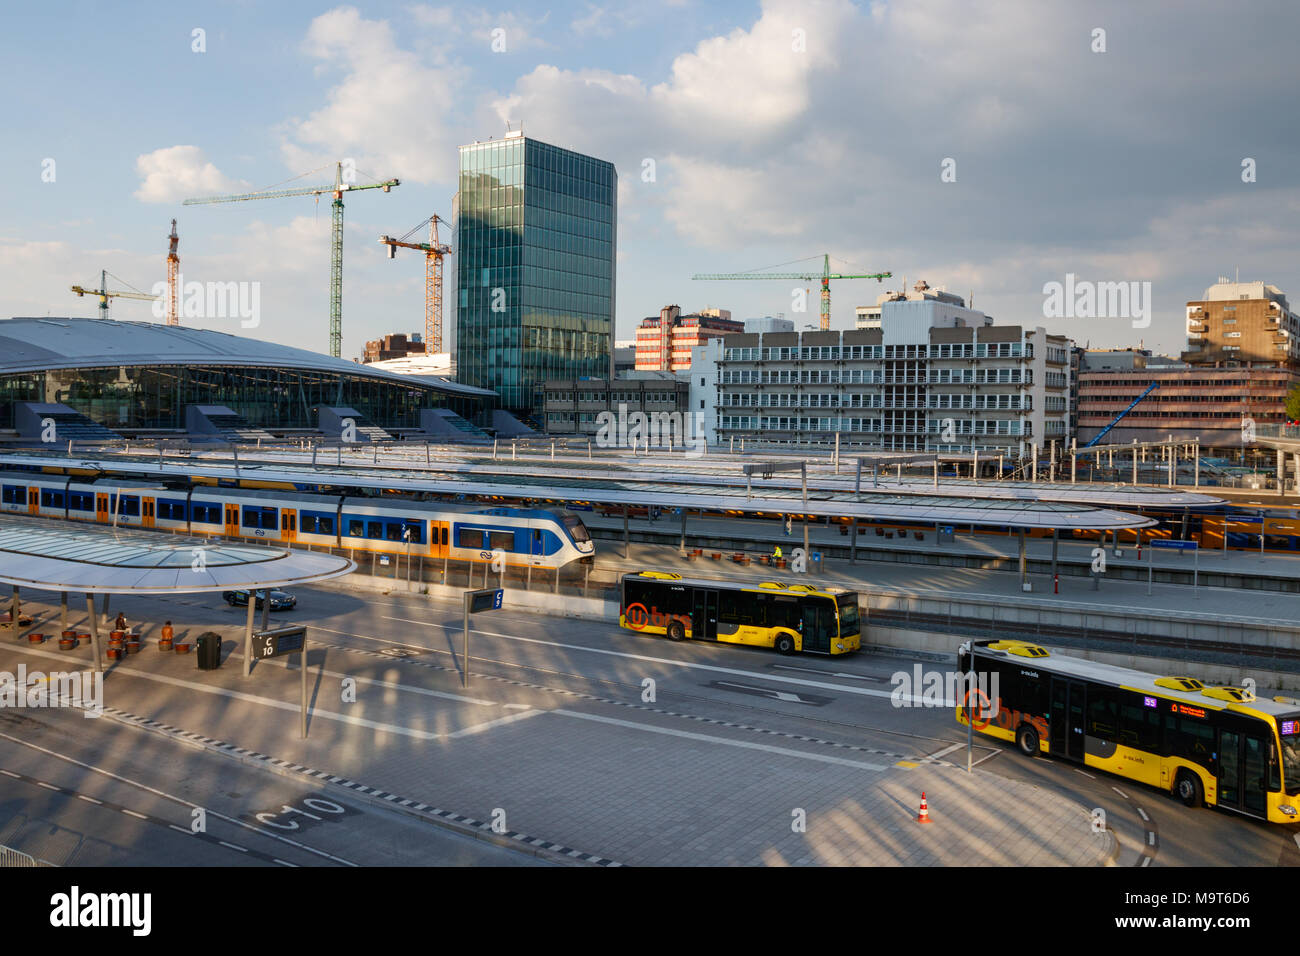 Le piattaforme di Utrecht Centraal stazione ferroviaria con treni e la stazione degli autobus con lasciando gli autobus in una giornata di sole. Utrecht, Paesi Bassi. Foto Stock